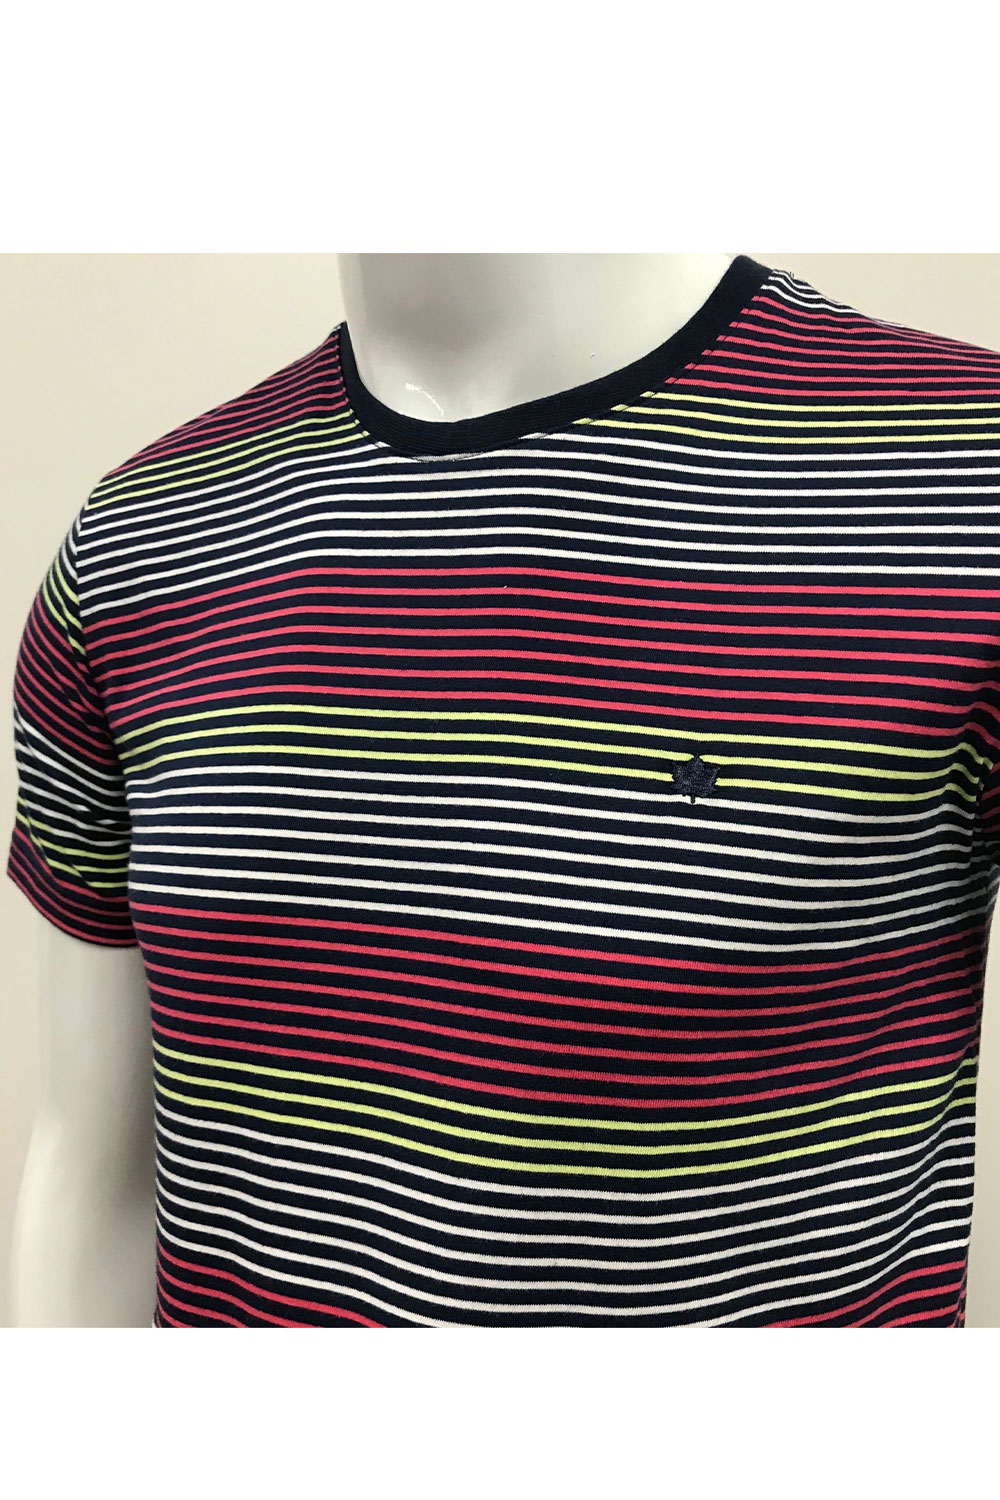 camiseta masculina marinho listrado colorido meia malha seeder se0301115 di0239